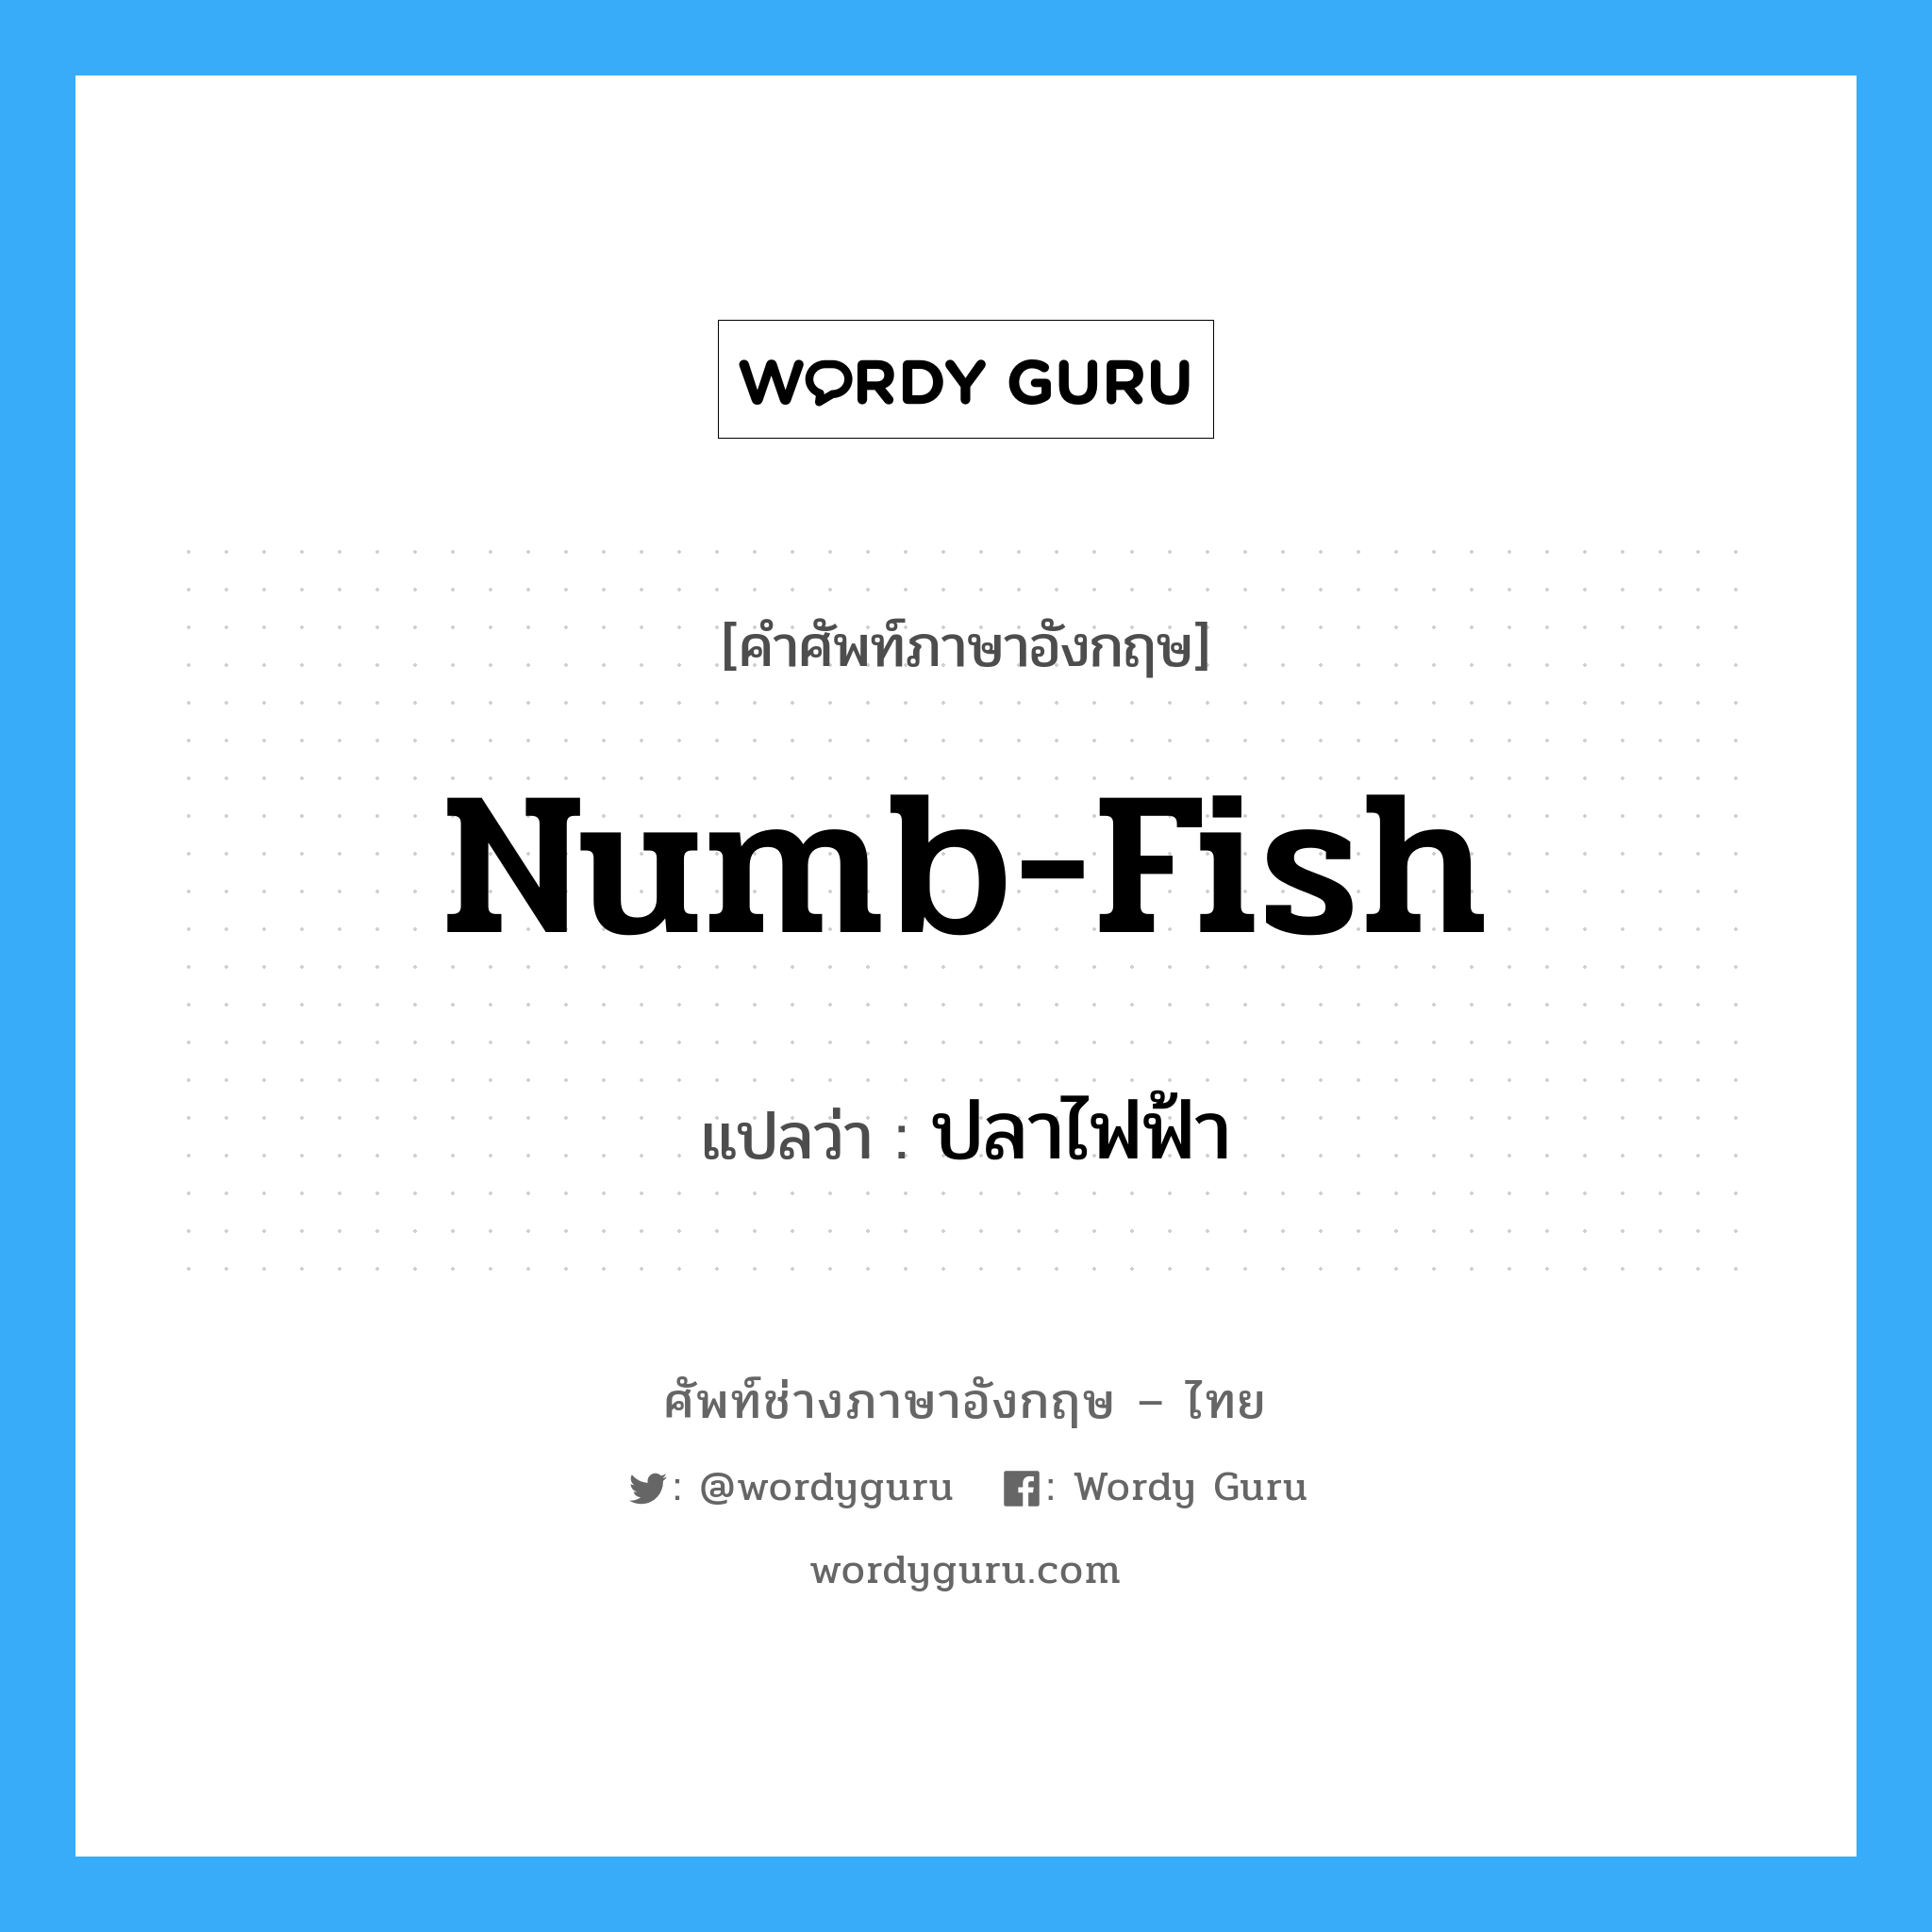 ปลาไฟฟ้า ภาษาอังกฤษ?, คำศัพท์ช่างภาษาอังกฤษ - ไทย ปลาไฟฟ้า คำศัพท์ภาษาอังกฤษ ปลาไฟฟ้า แปลว่า numb-fish